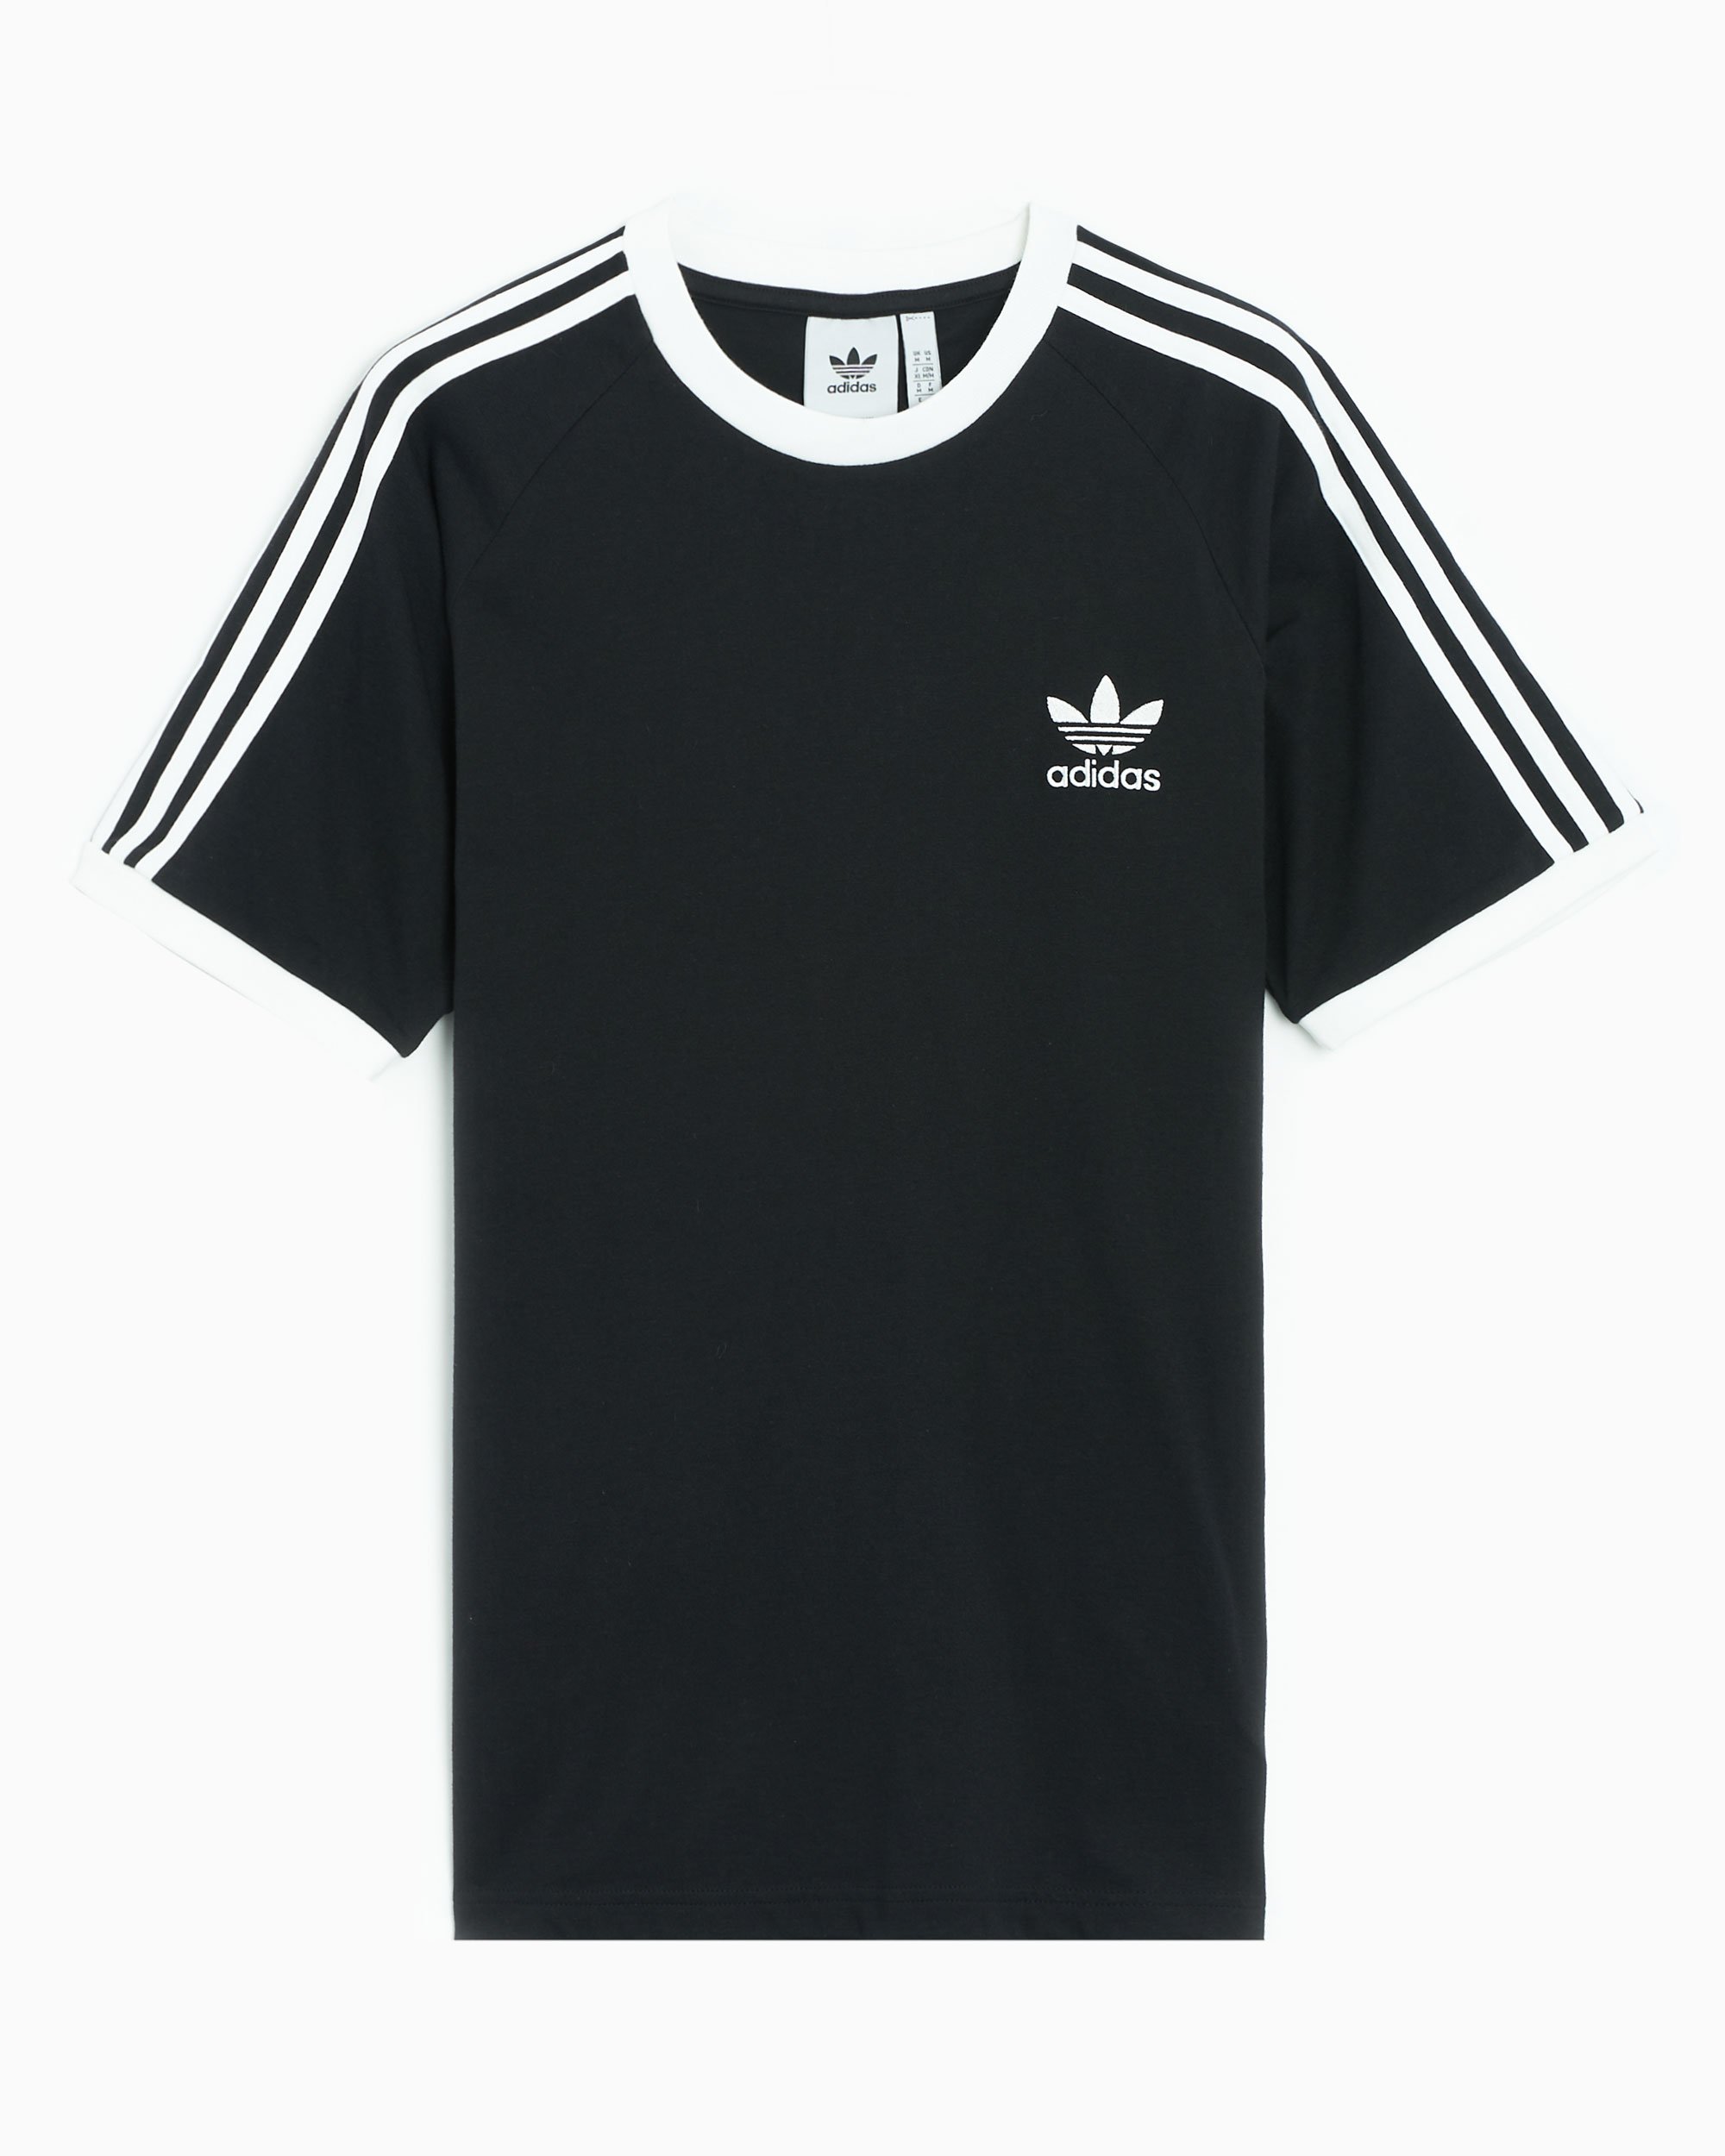 adidas Originals 3 Stripes Men\'s FOOTDISTRICT at Black IA4845| Buy Online T-Shirt